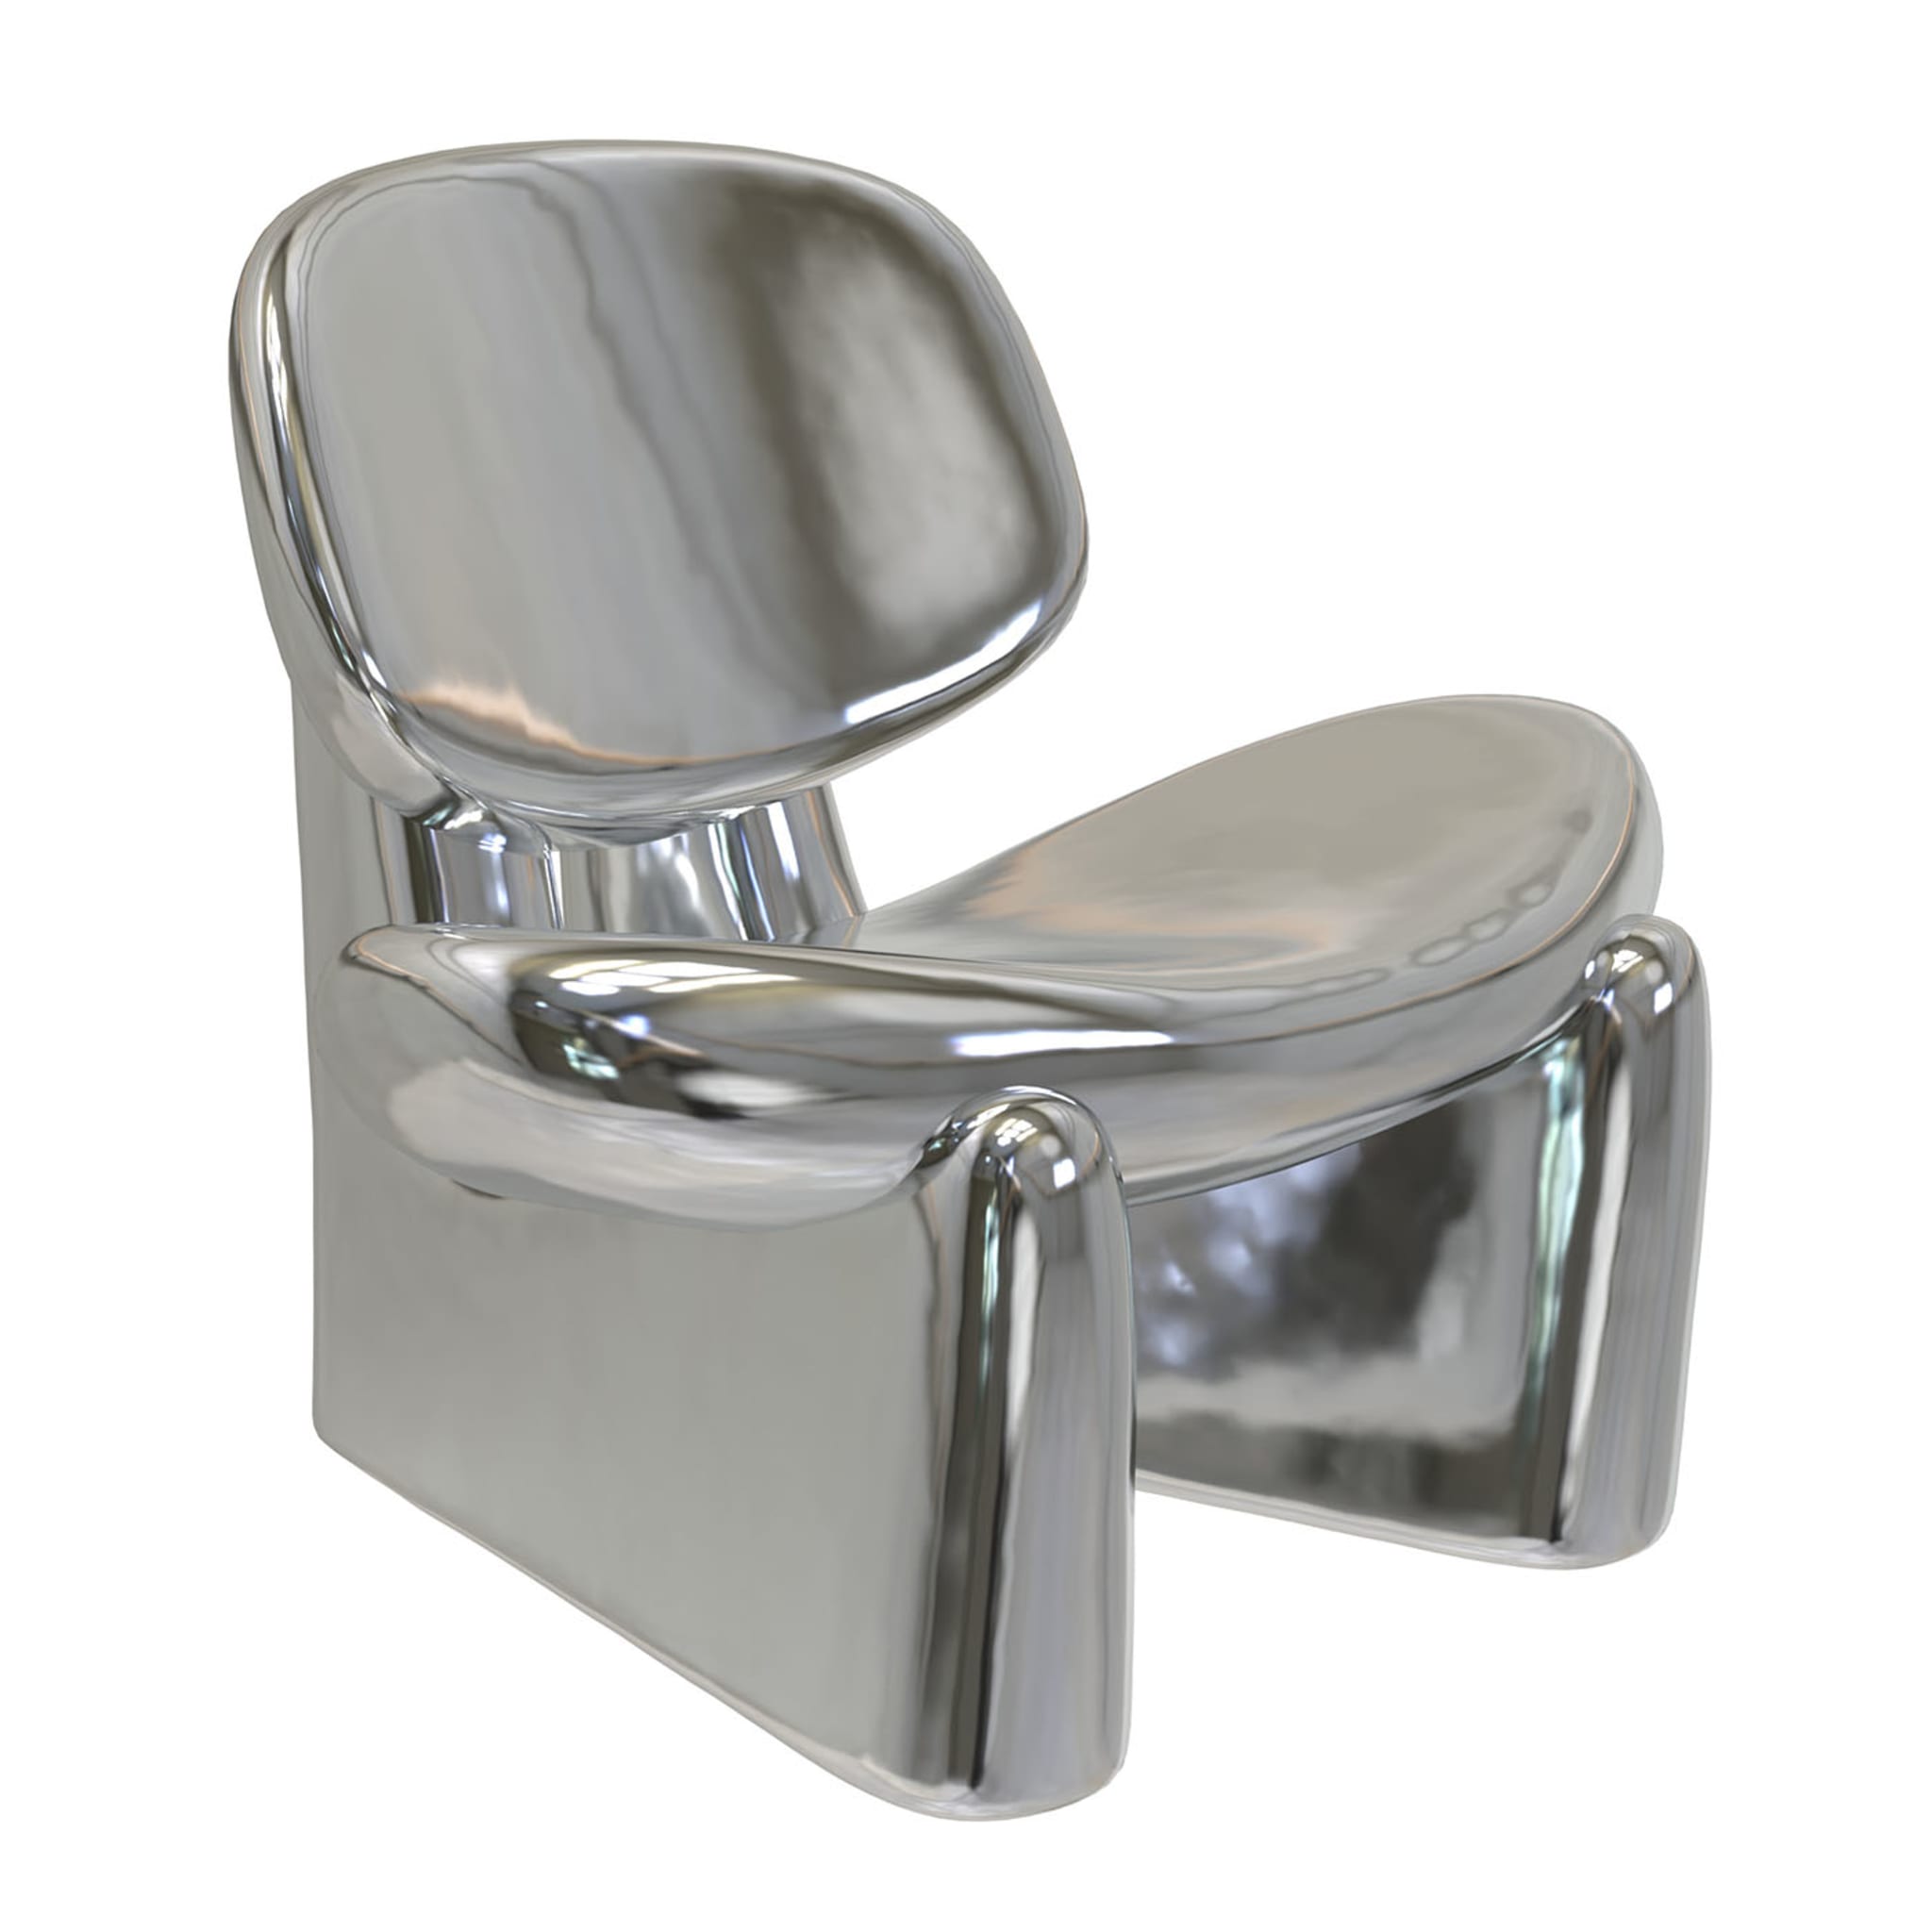 Pau V1 Silver Sculptural Chair - Alternative view 1